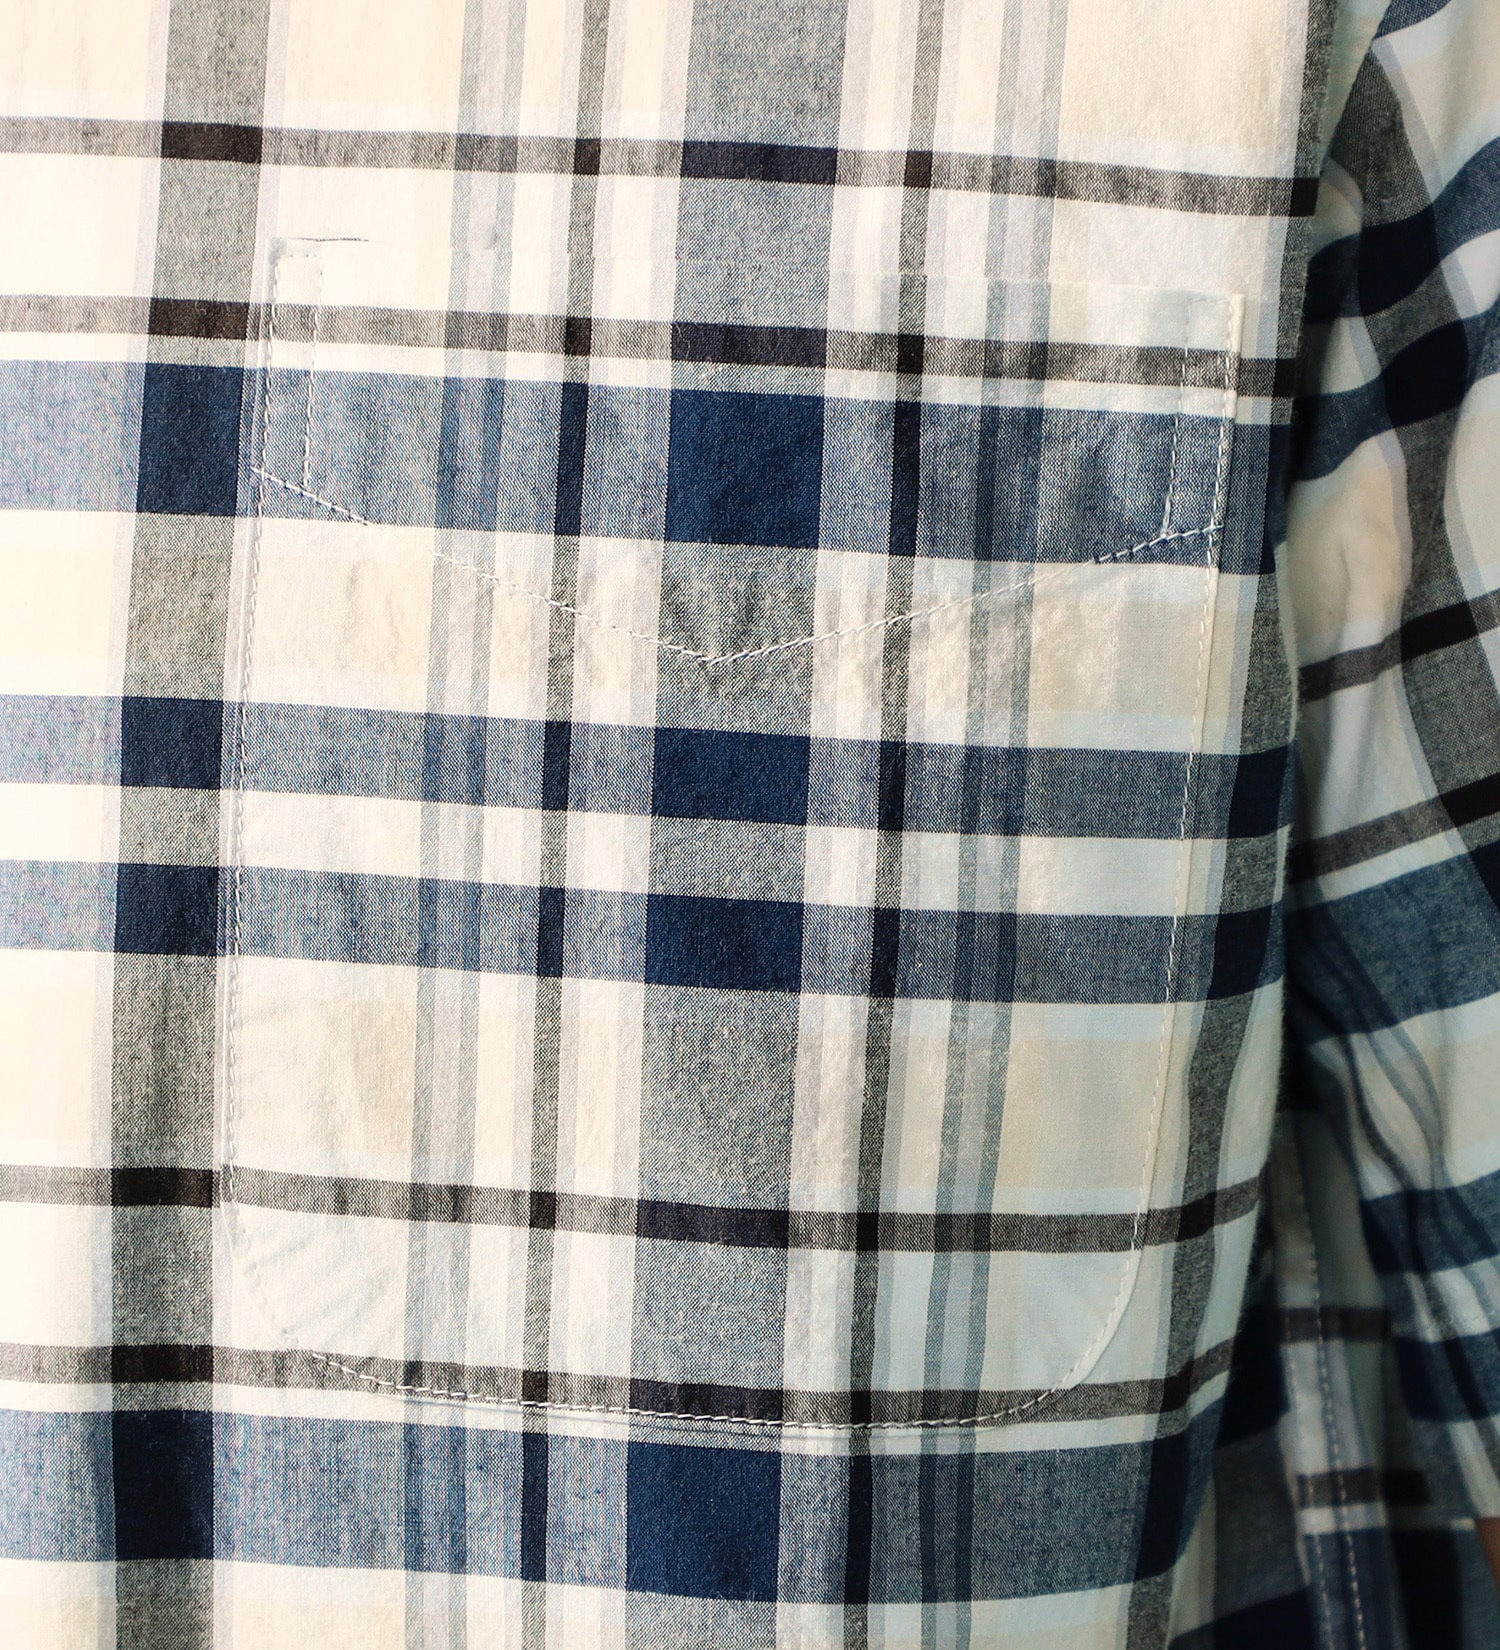 EDWIN(エドウイン)の半袖 ボタンダウンシャツ|トップス/シャツ/ブラウス/メンズ|チェック